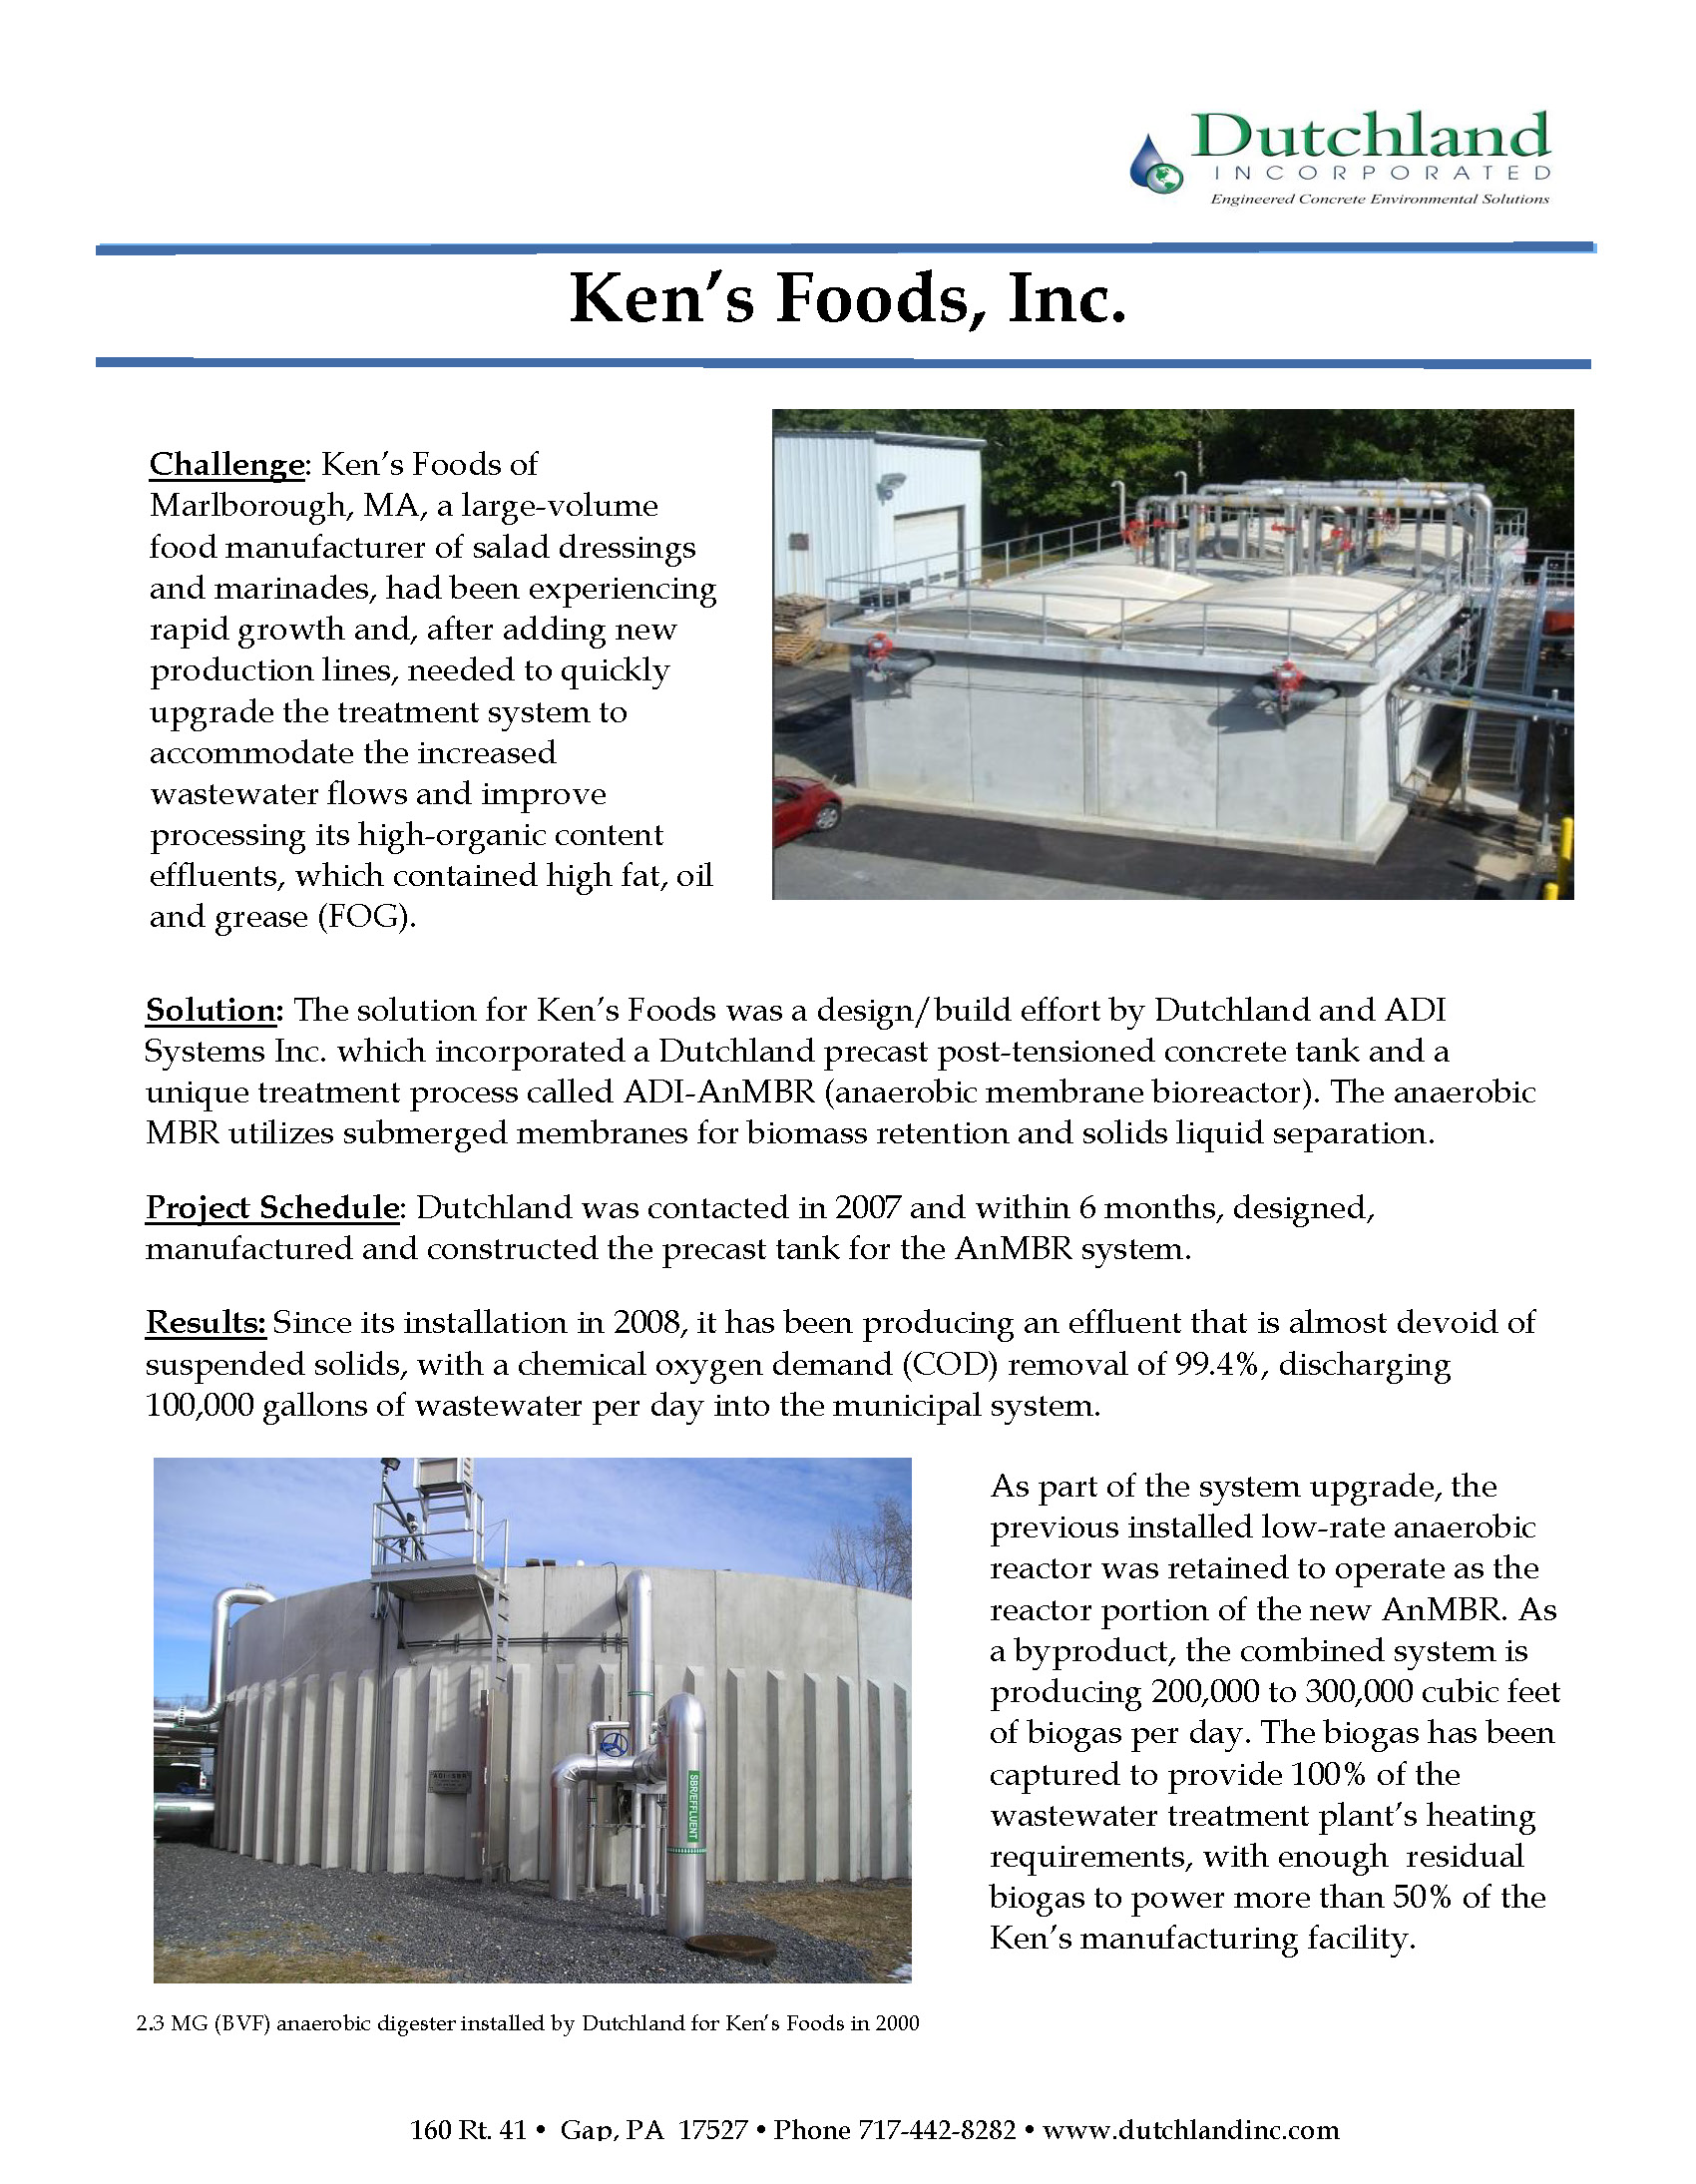 ken's foods case study